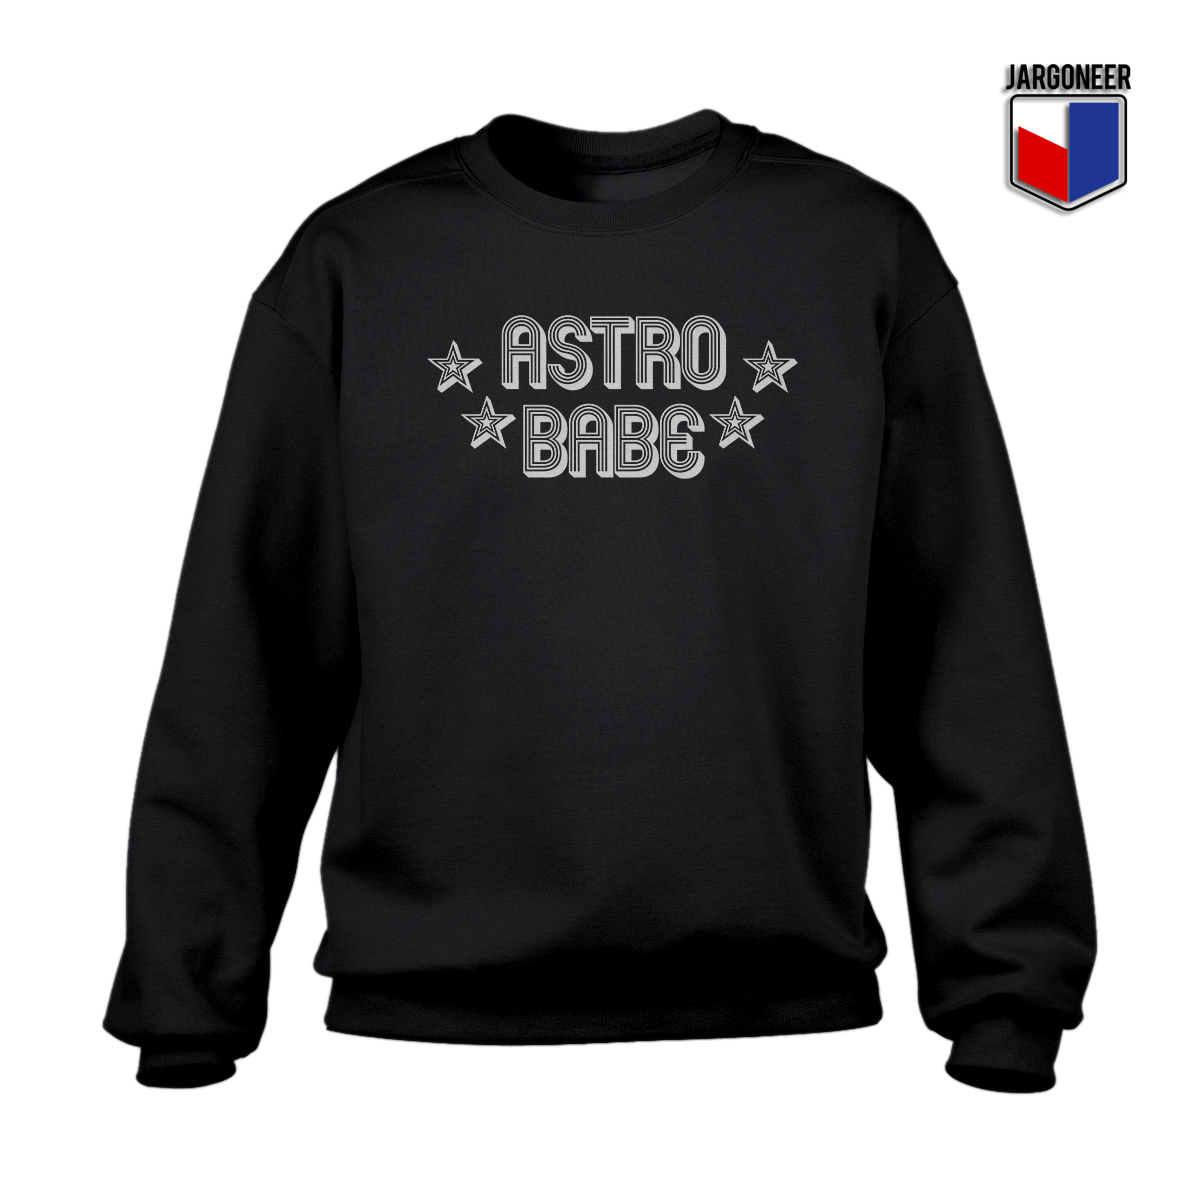 Astro Babe Black SS - Shop Unique Graphic Cool Shirt Designs